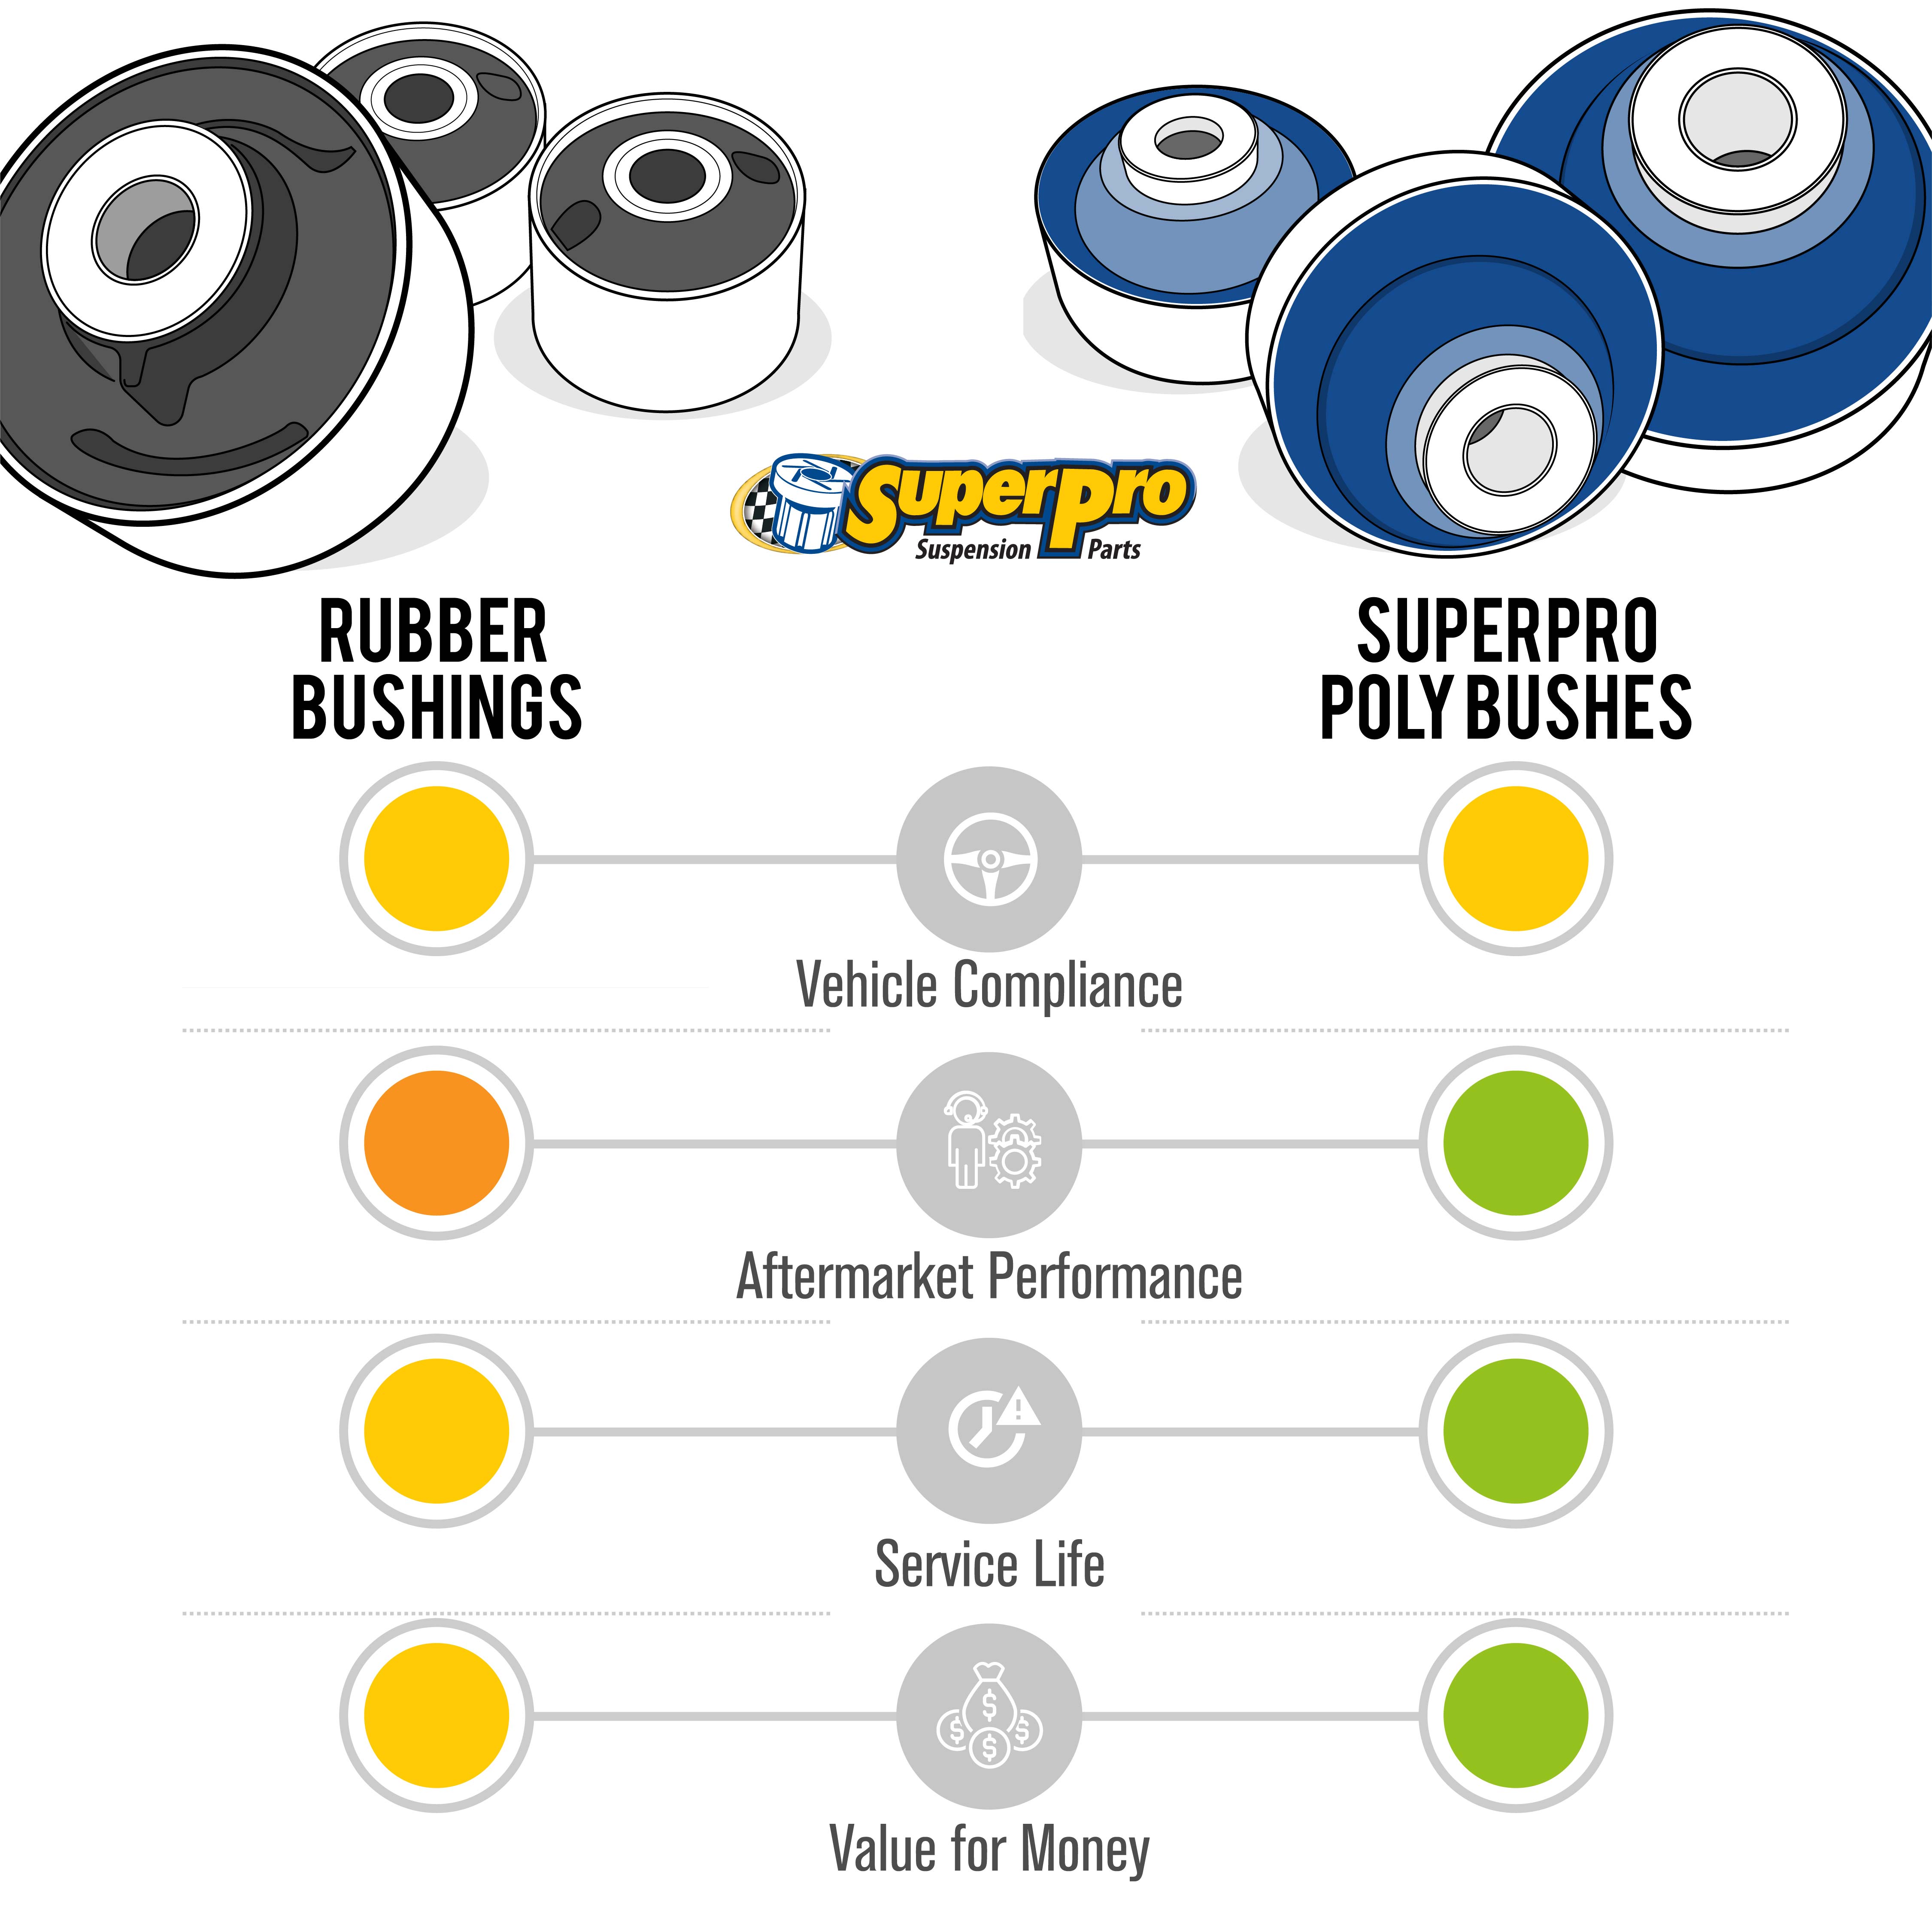 Bushing vs rubber comparison